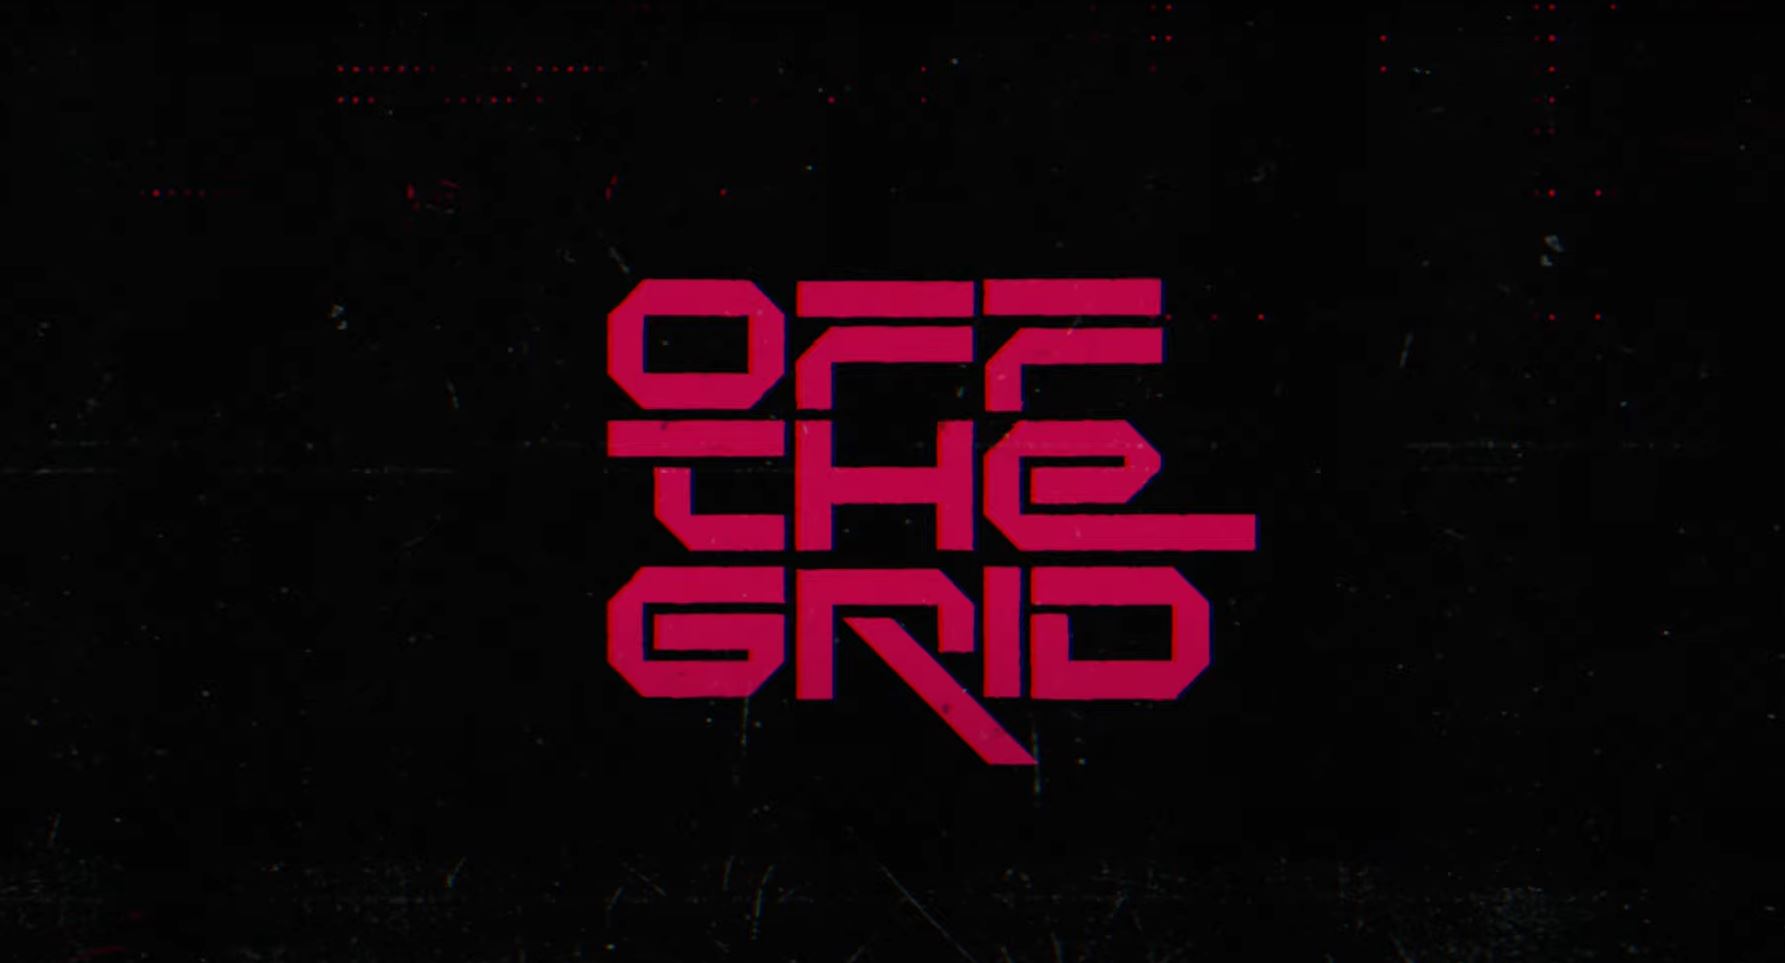 Off The Grid es un juego battle royale cyberpunk del director de Distrito 9 y Chappie